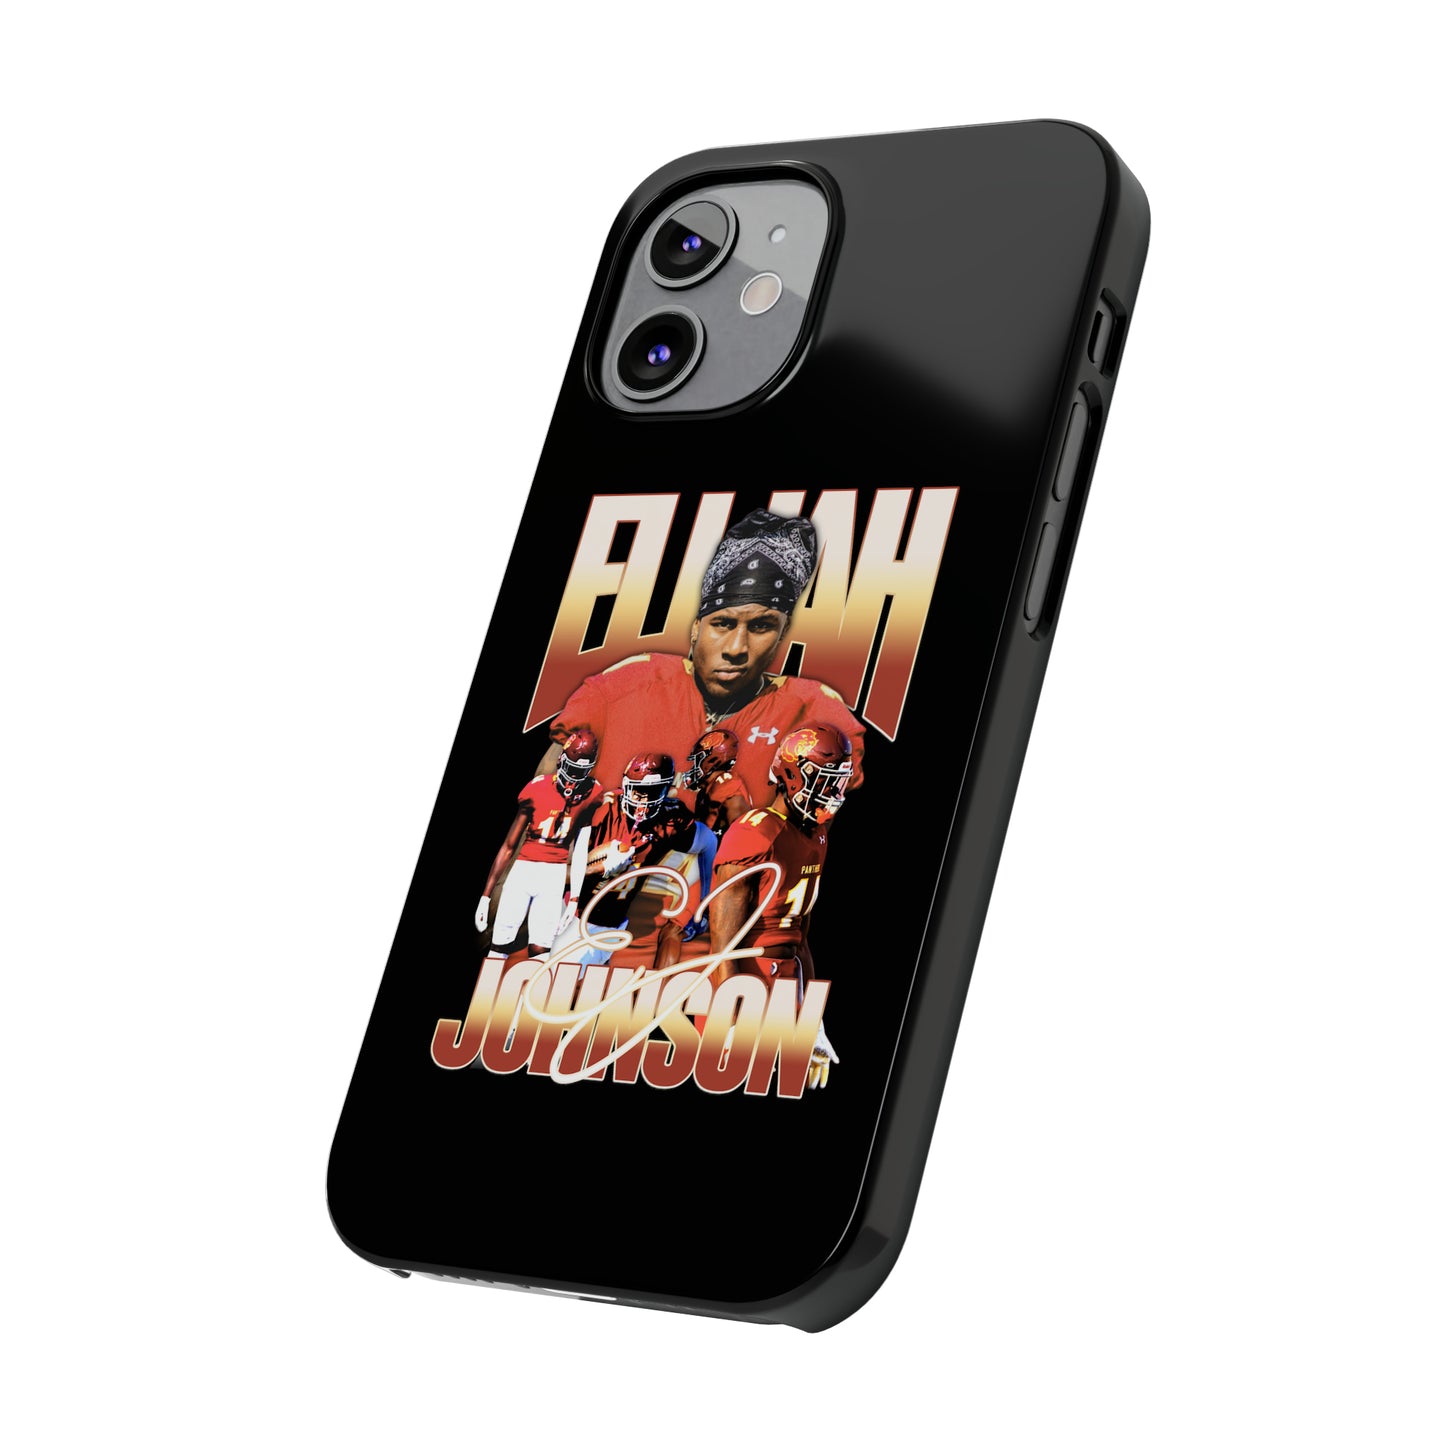 Elijah Johnson Slim Phone Cases